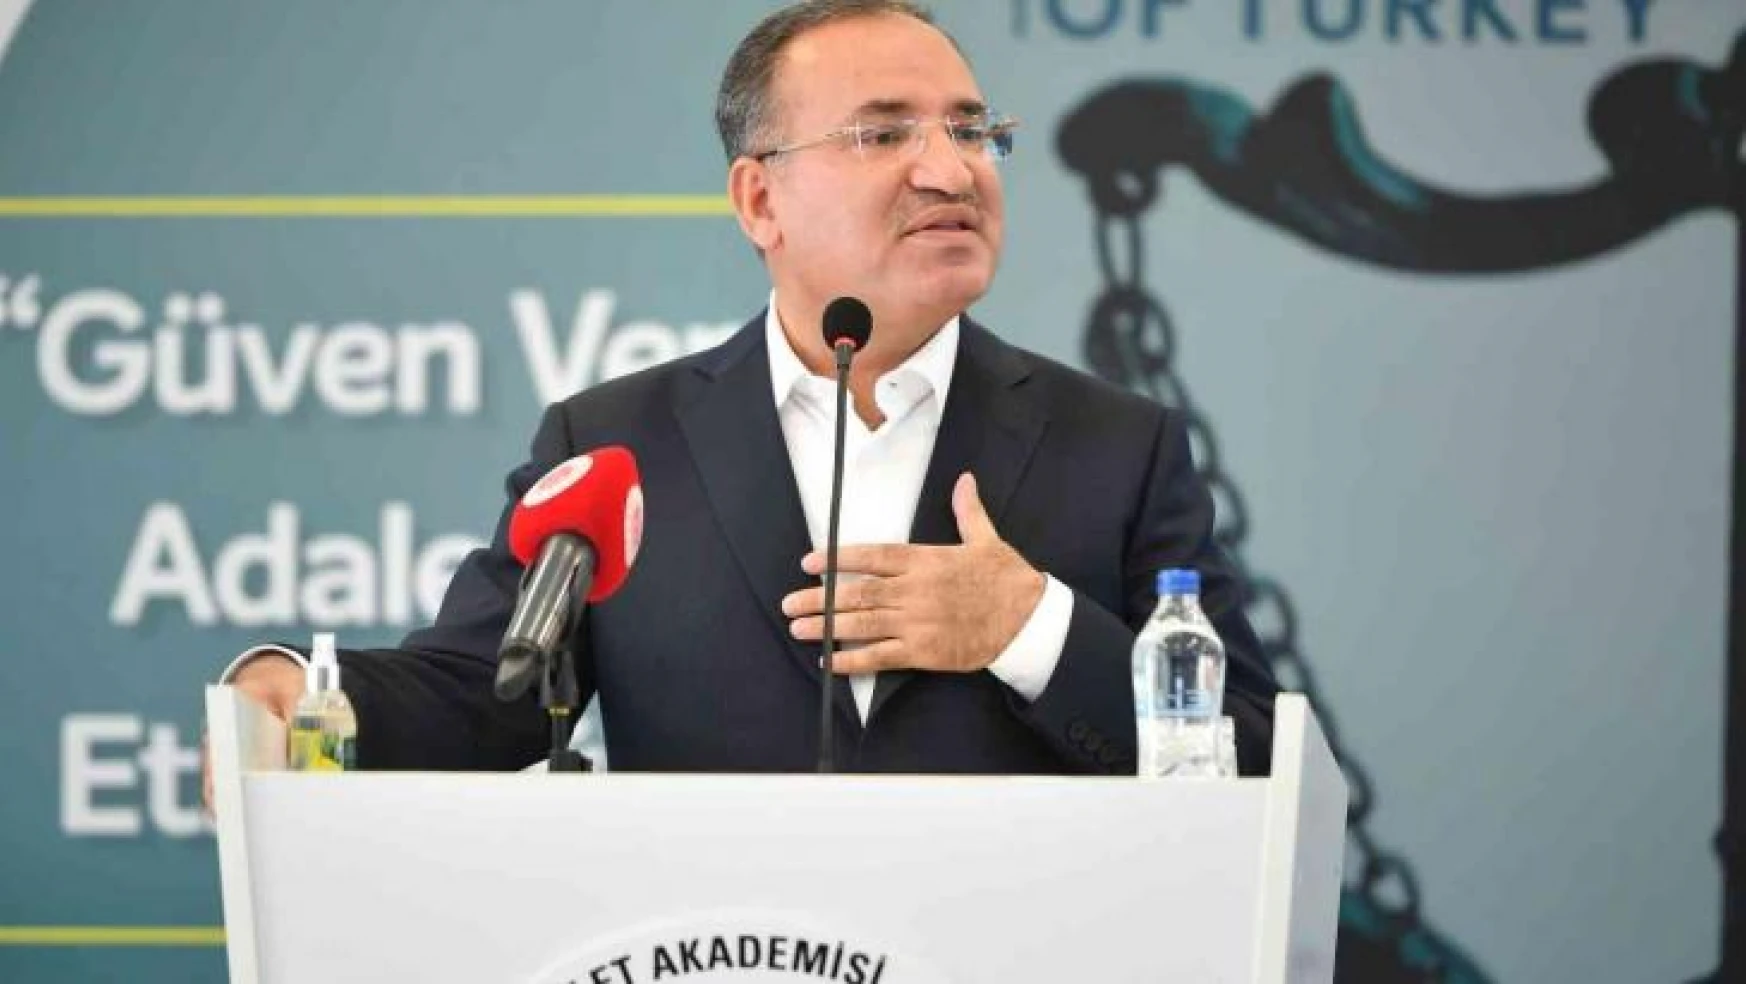 Adalet Bakanı Bozdağ: 'Yargıda yapay zeka kullanımı çalışması yürütüyoruz'